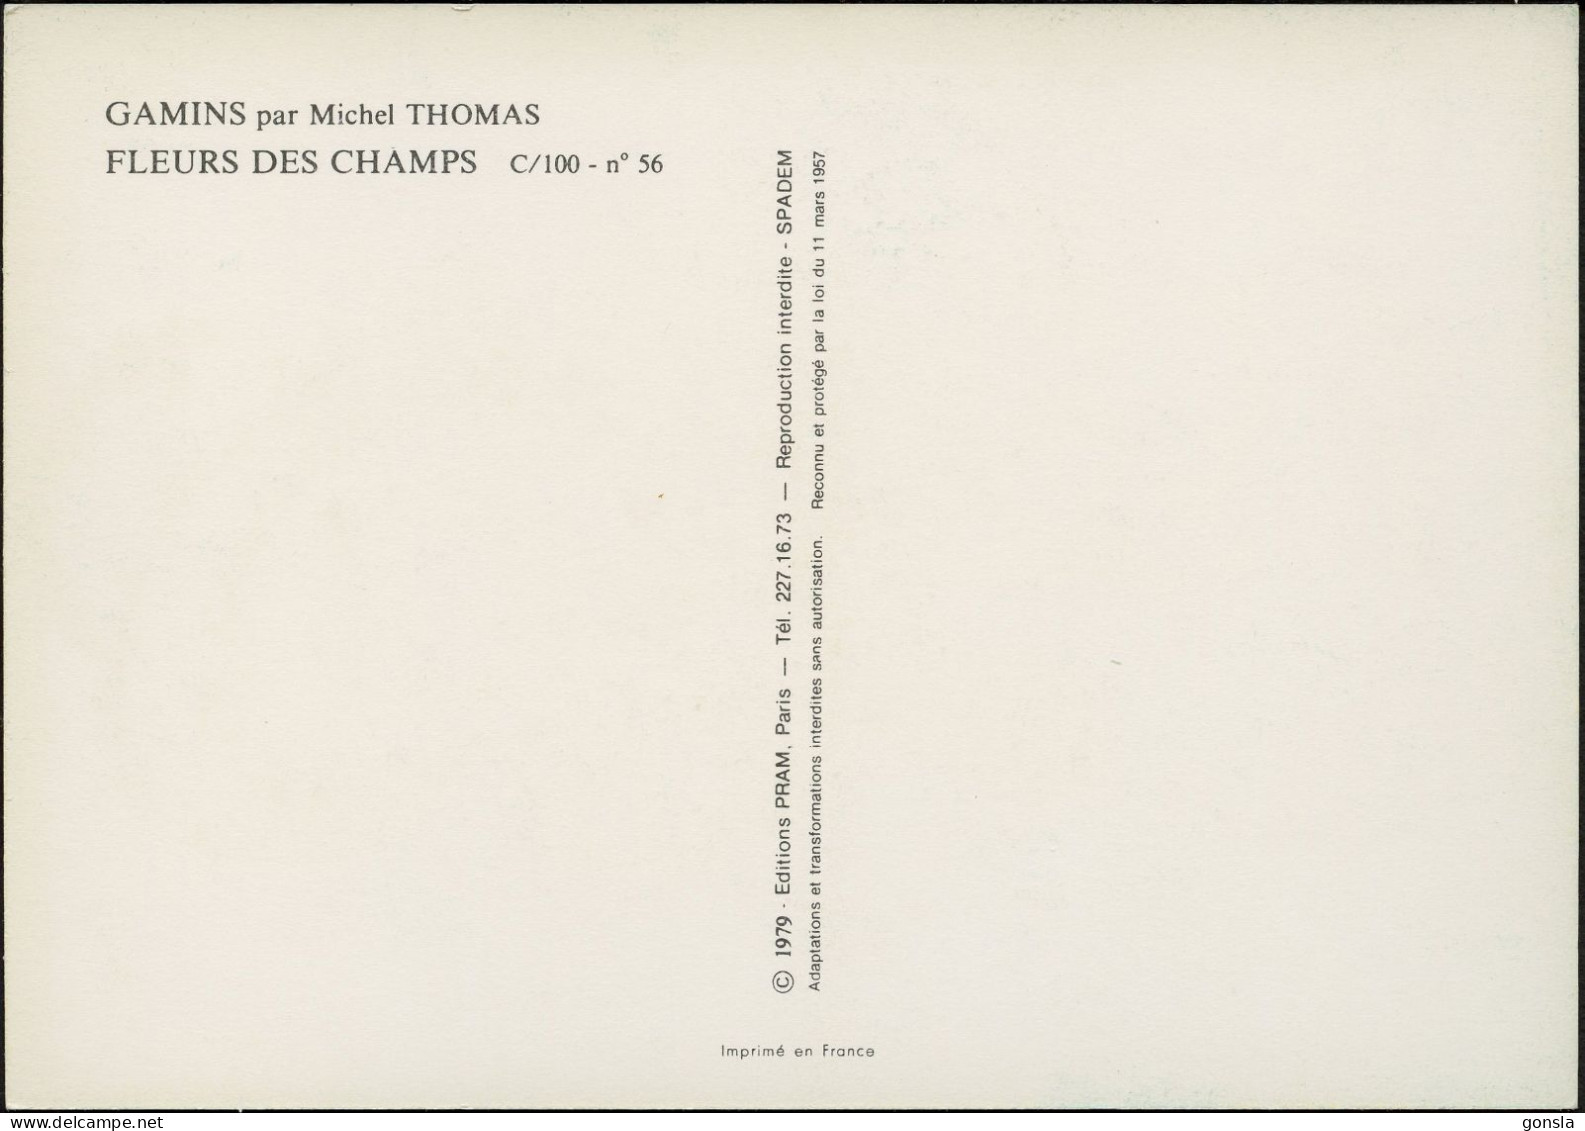 GAMINS 1979 "Michel Thomas" Lot de 4 cartes postales